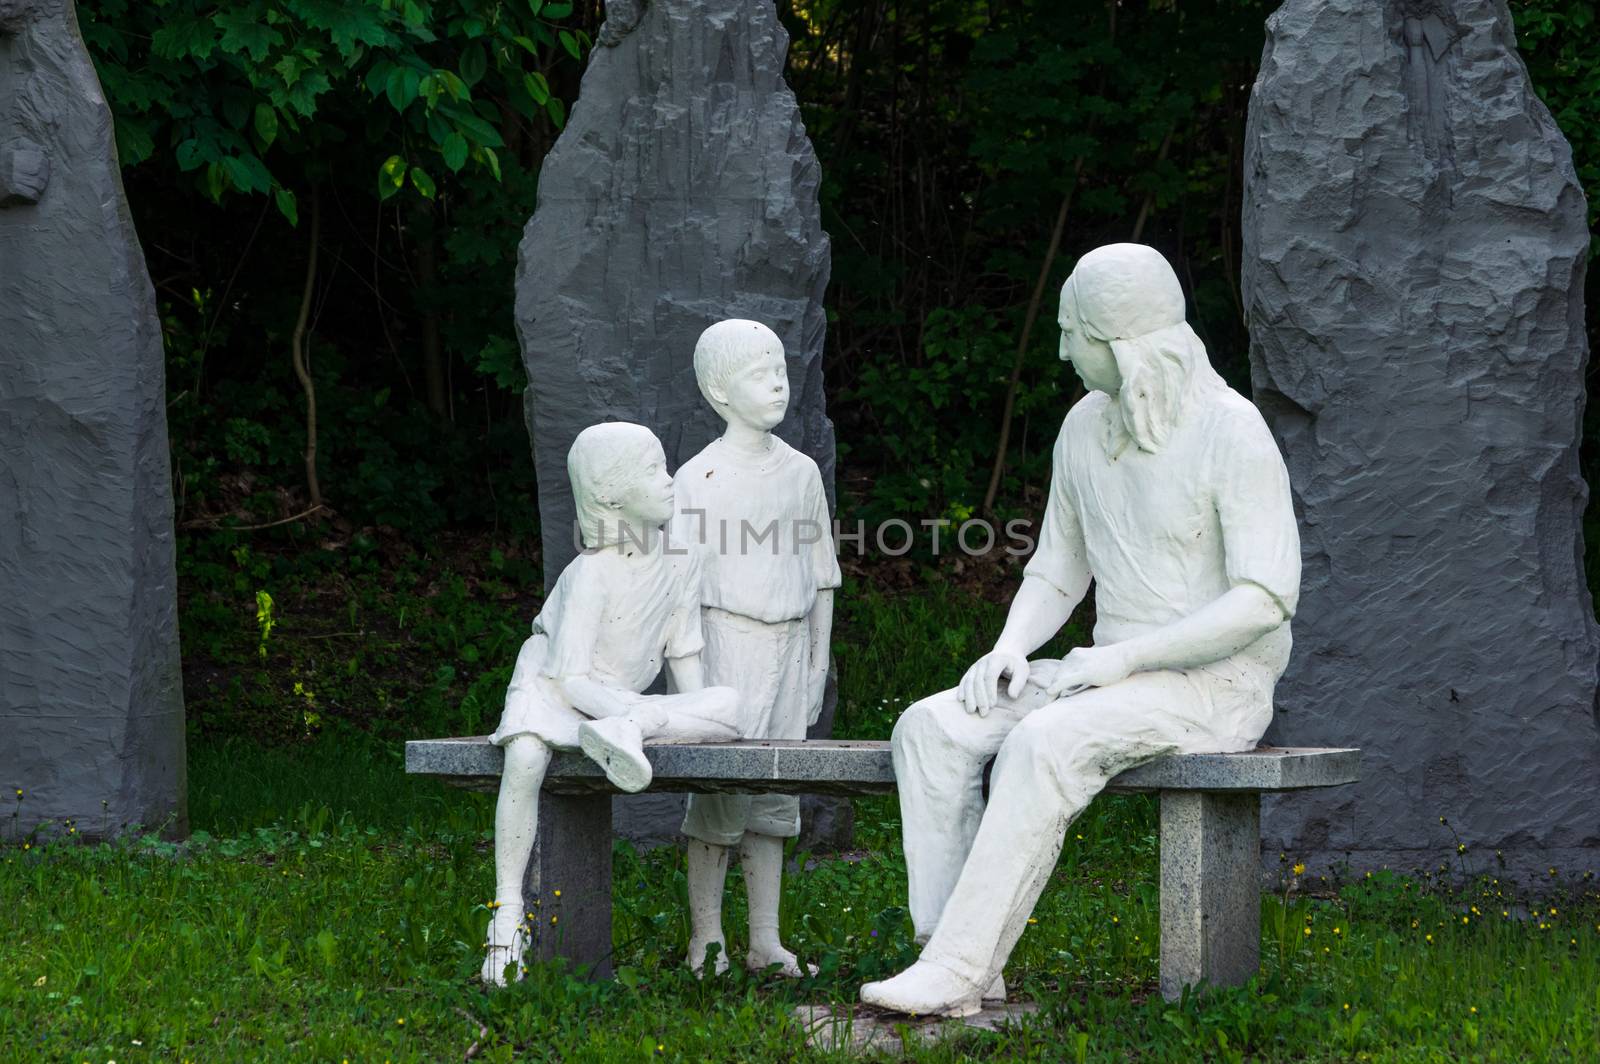 Statue of Nikolaus Ludwig, Reichsgraf von Zinzendorf und Pottendorf teaching children while sitting on a stone bench in a park.